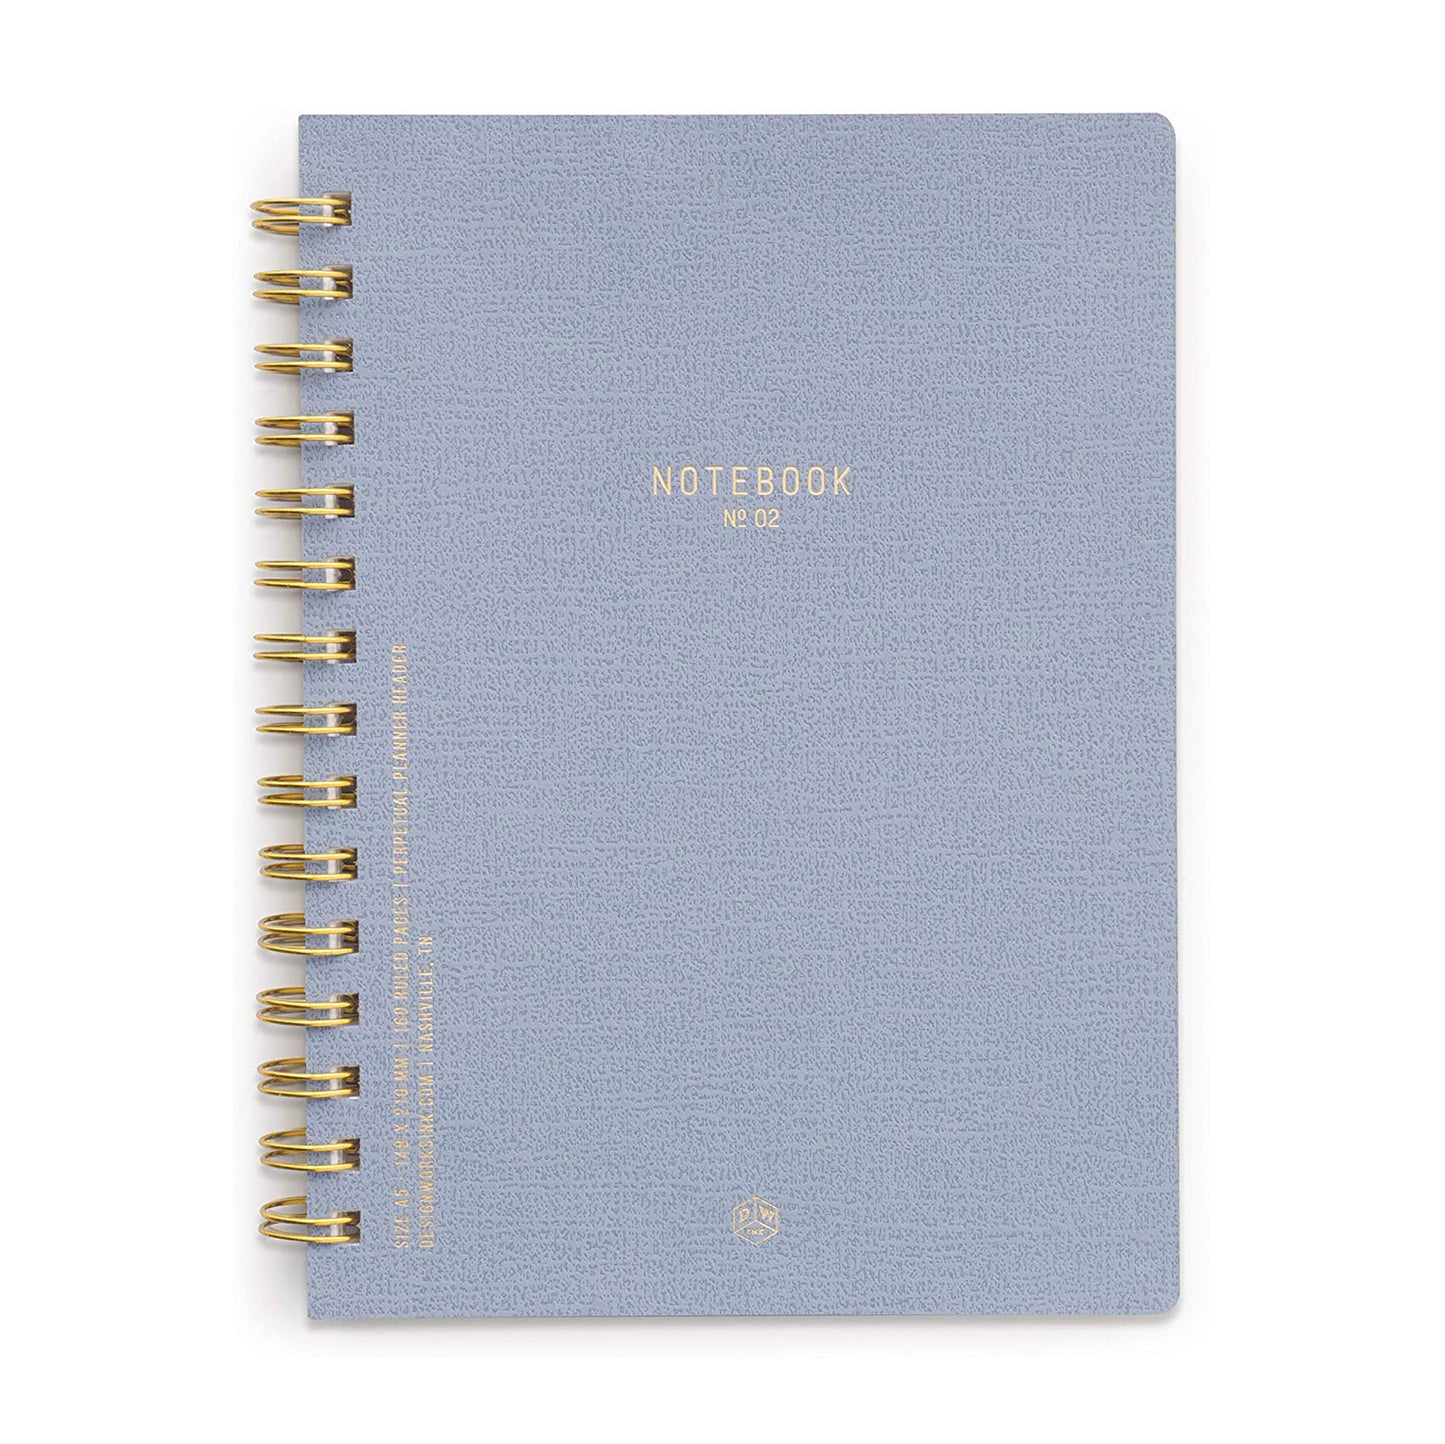 DesignWorks Ink Textured Paper Twin Wire Bound Notebook No. 2, Neptune Blue